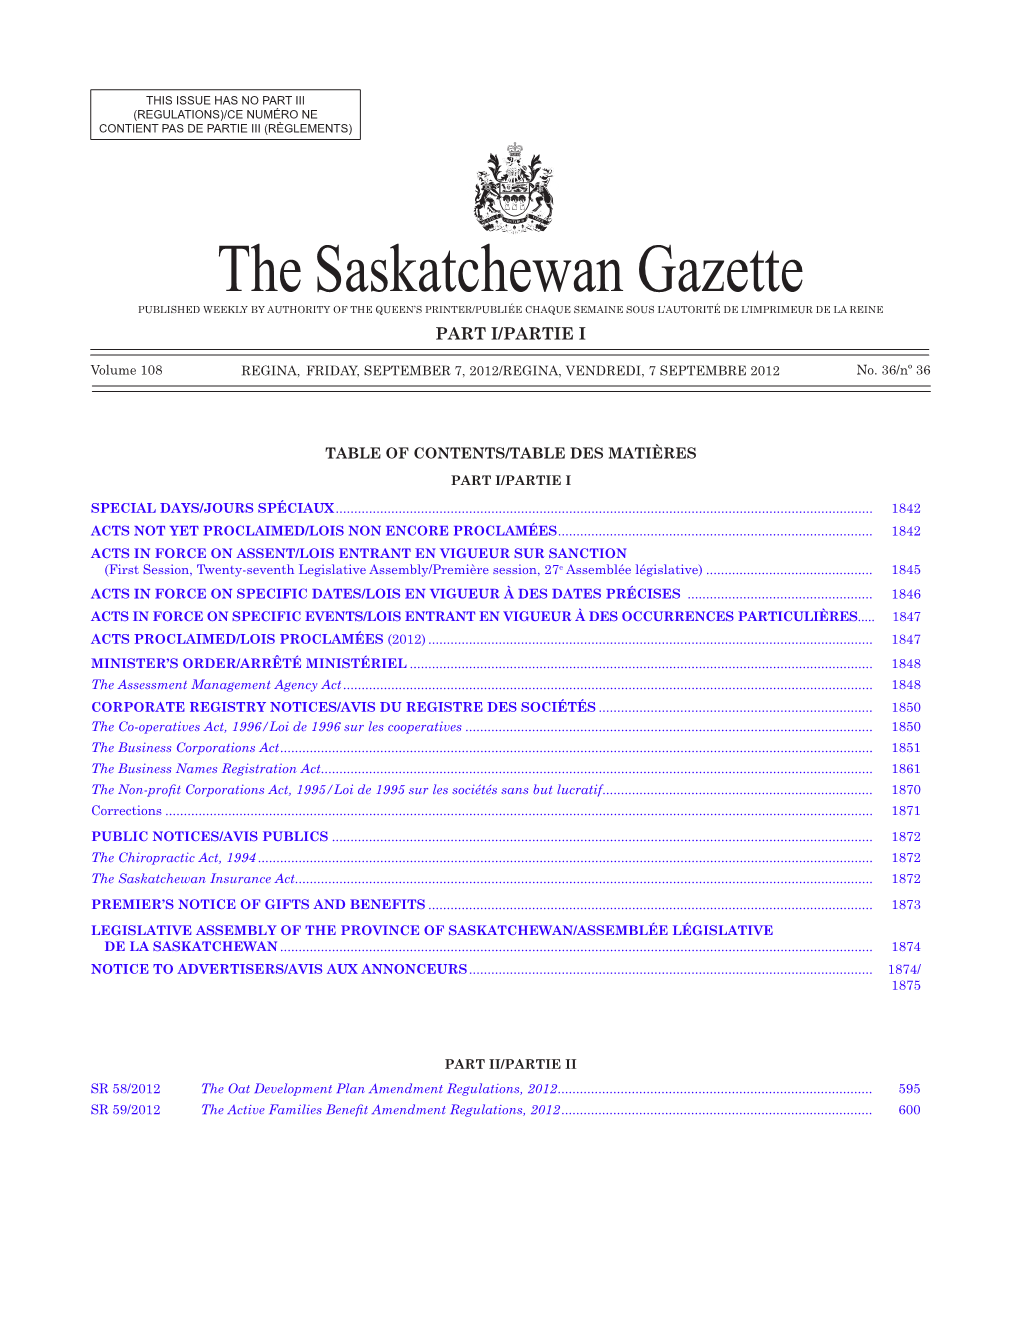 THE SASKATCHEWAN GAZETTE, September 7, 2012 1841 CONTIENT PAS DE PARTIE III (RÈGLEMENTS)